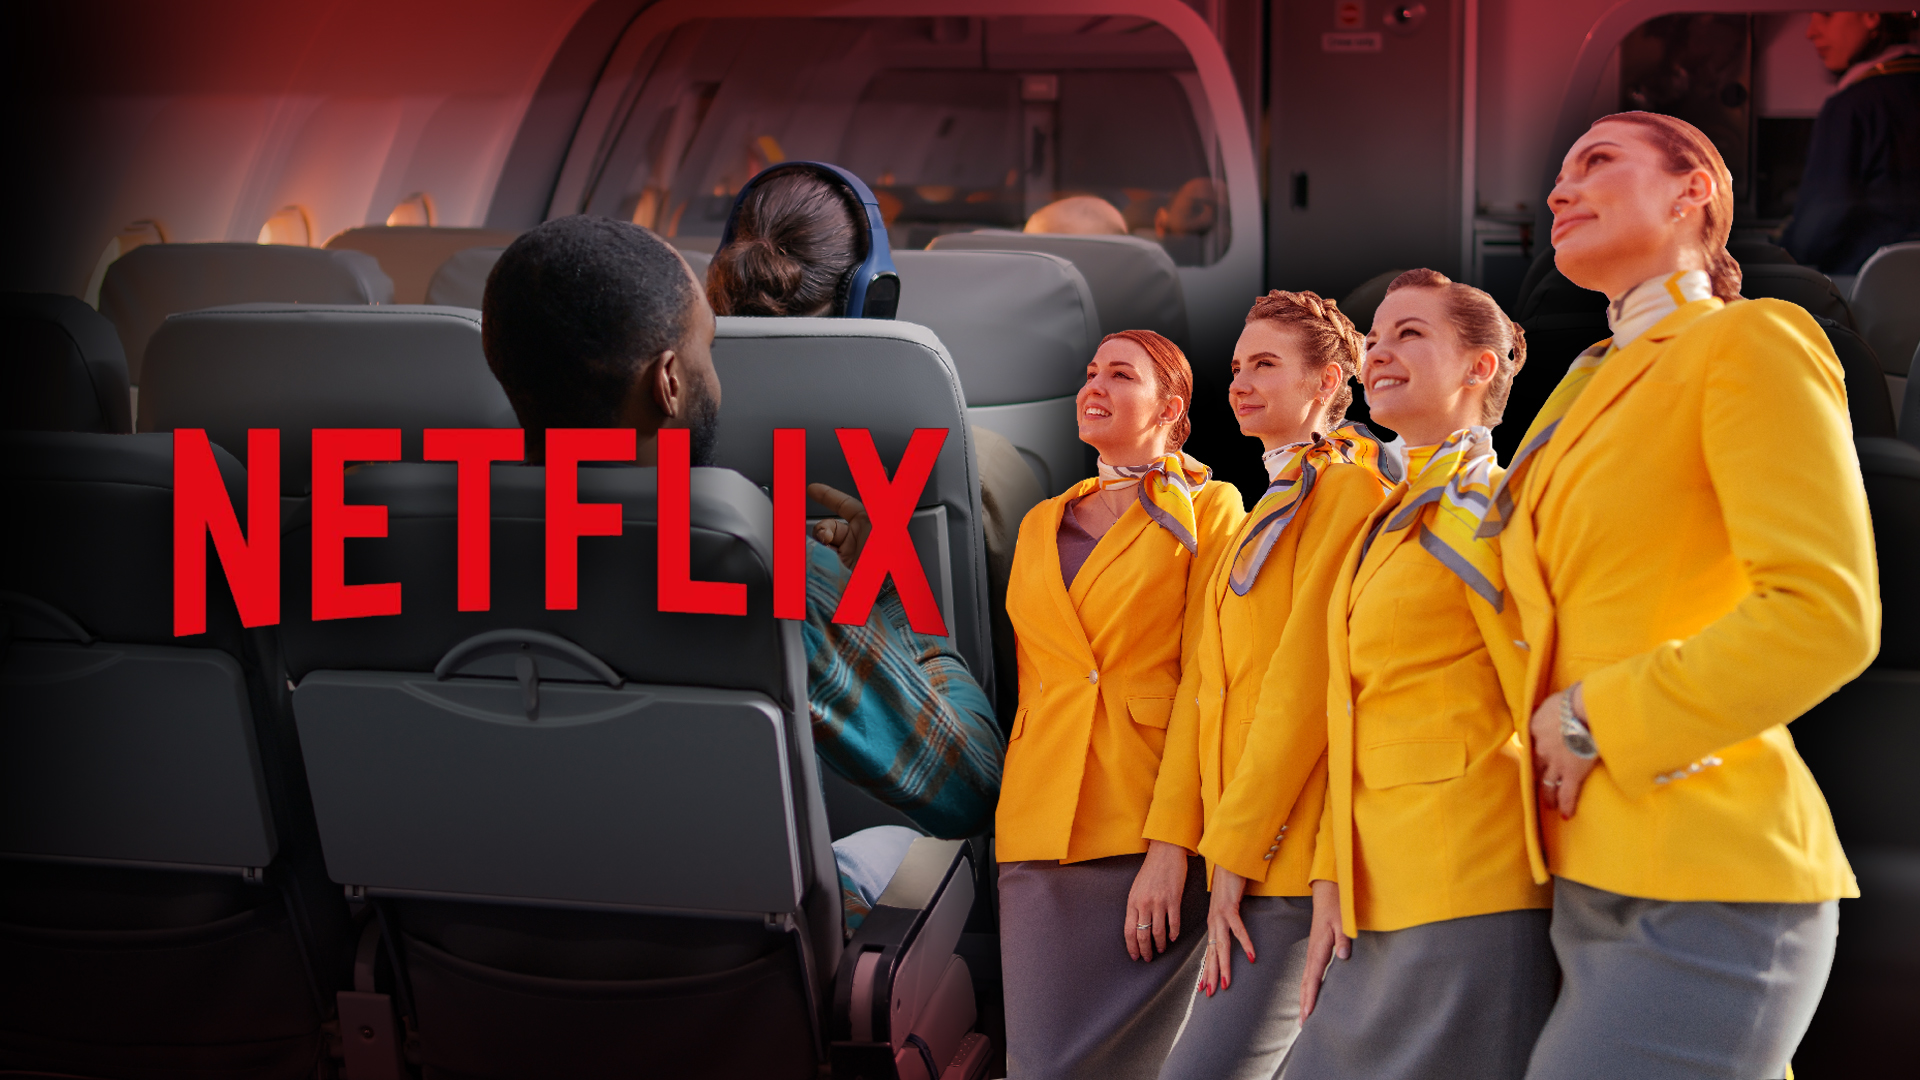 Netflix รับสมัครพนักงานต้อนรับบนเครื่องบินส่วนตัว ให้ค่าตอบแทนสูงถึงปีละ 12 ล้านบาท